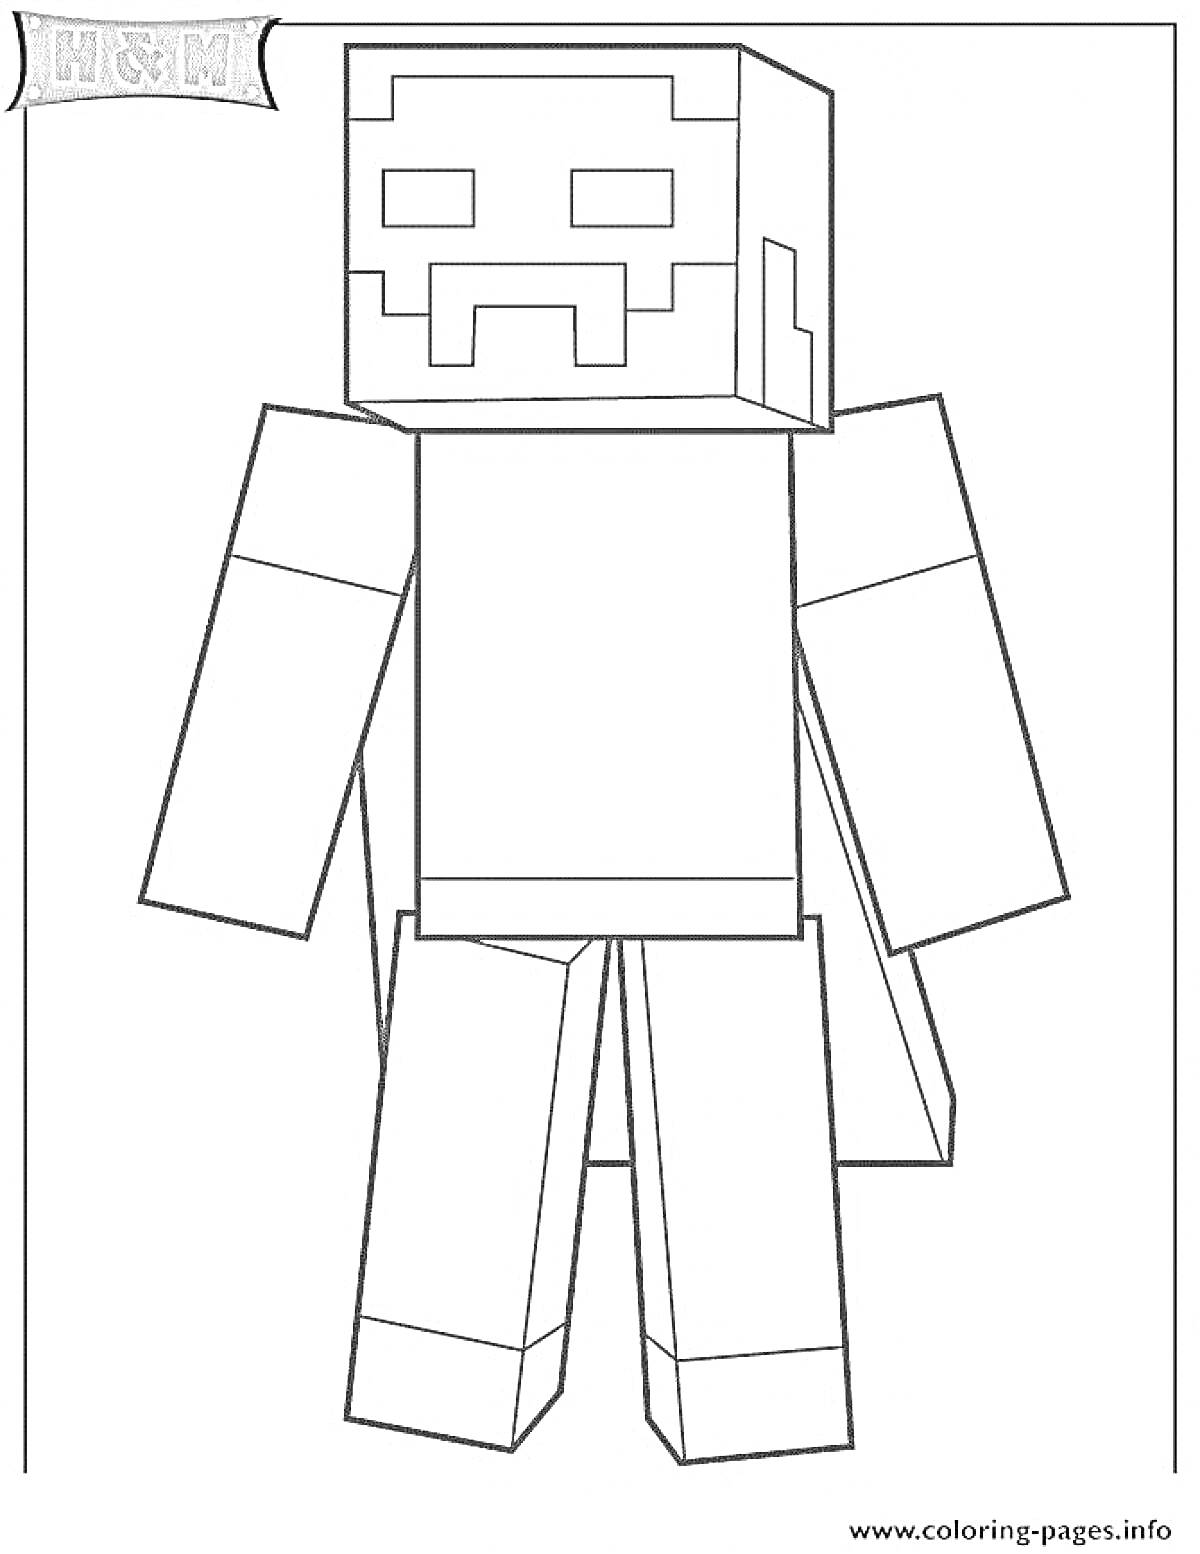 Раскраска Херобрин с прямоугольной головой, прямыми руками и ногами, без деталей одежды, в стилистике Minecraft